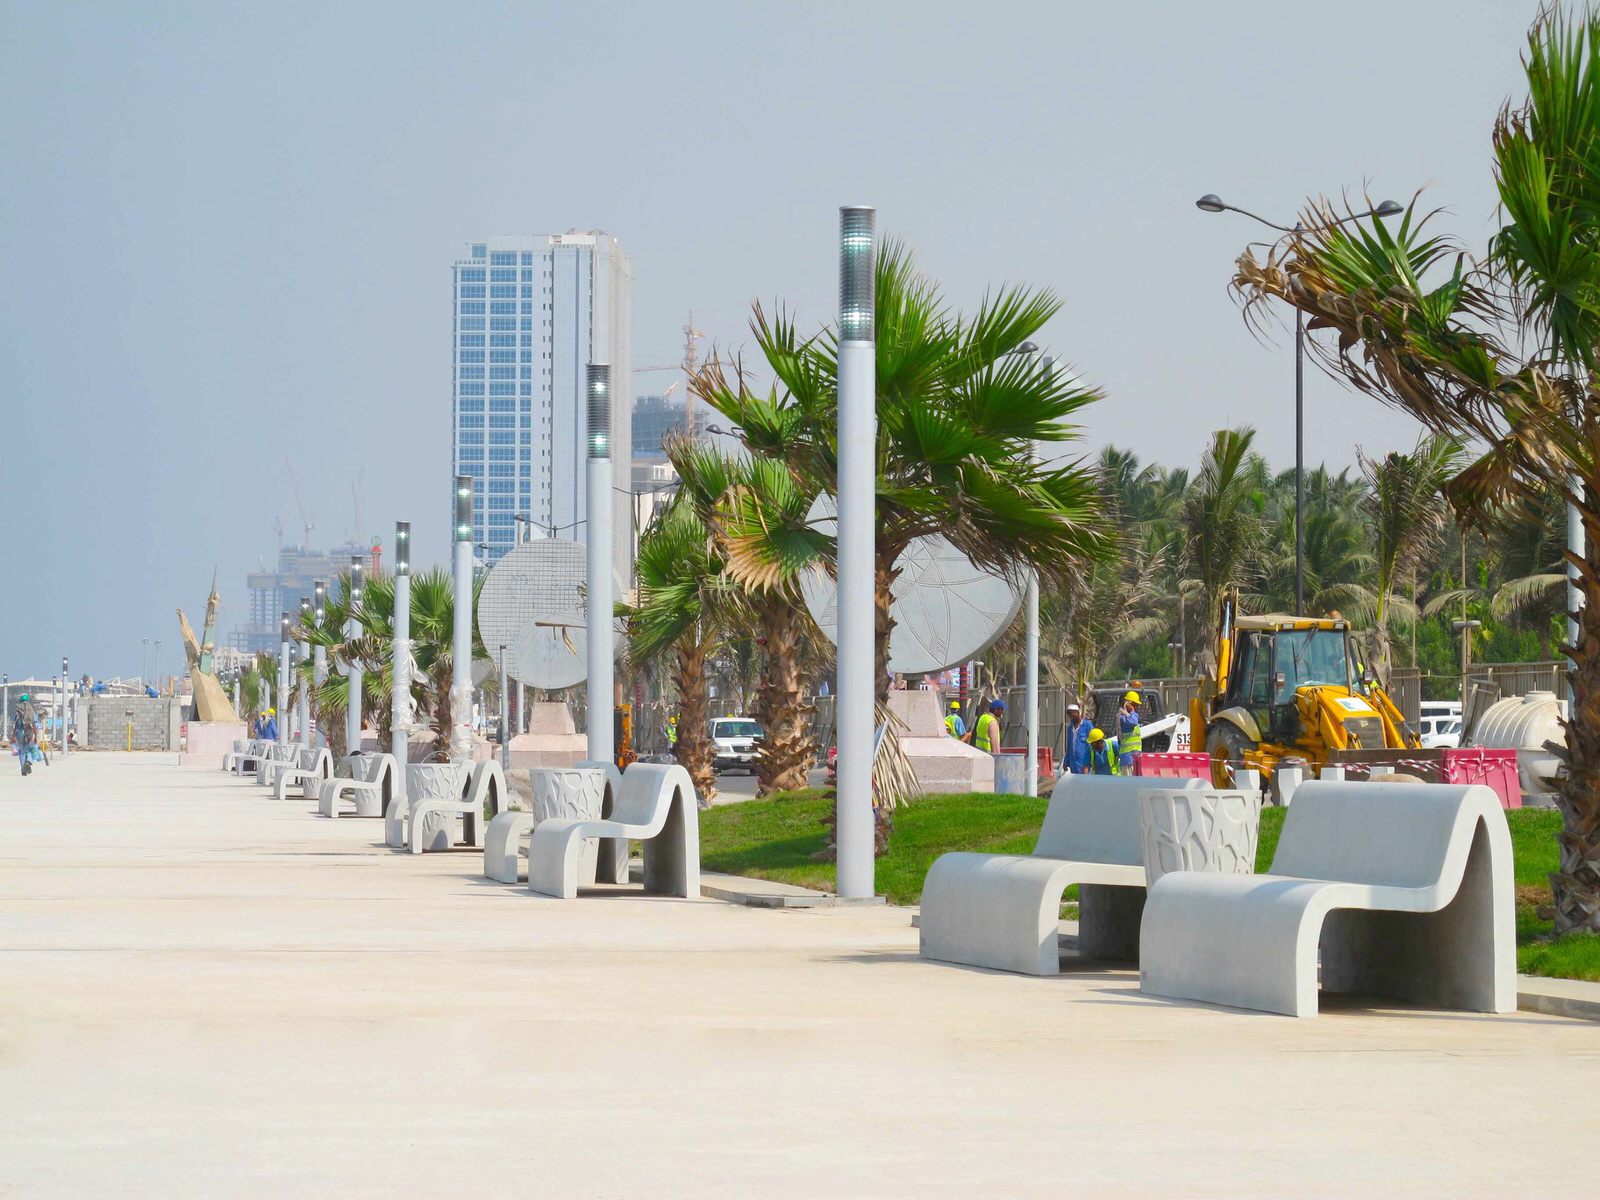 mobilier urbain banc et corbeilles LAB23 - Corniche Jeddah Arabie Saoudite